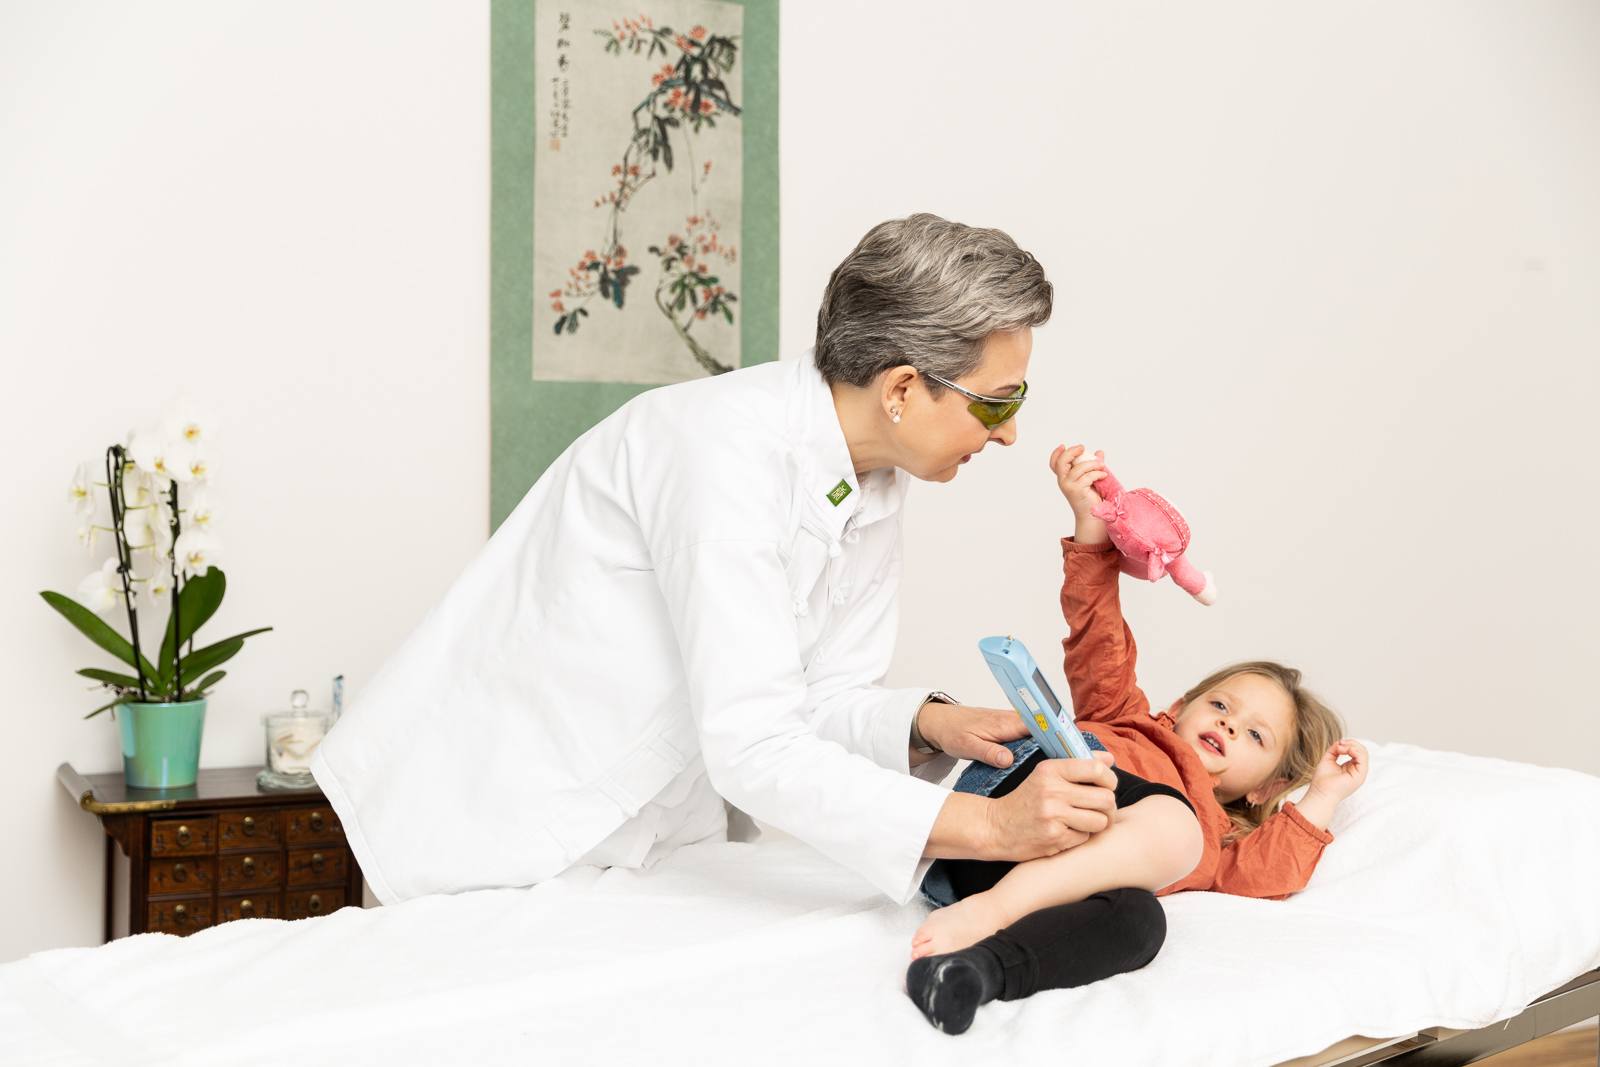 Frau Dr. med. Winckler-Schumann behandelt ein Mädchen mit Laserakupunktur